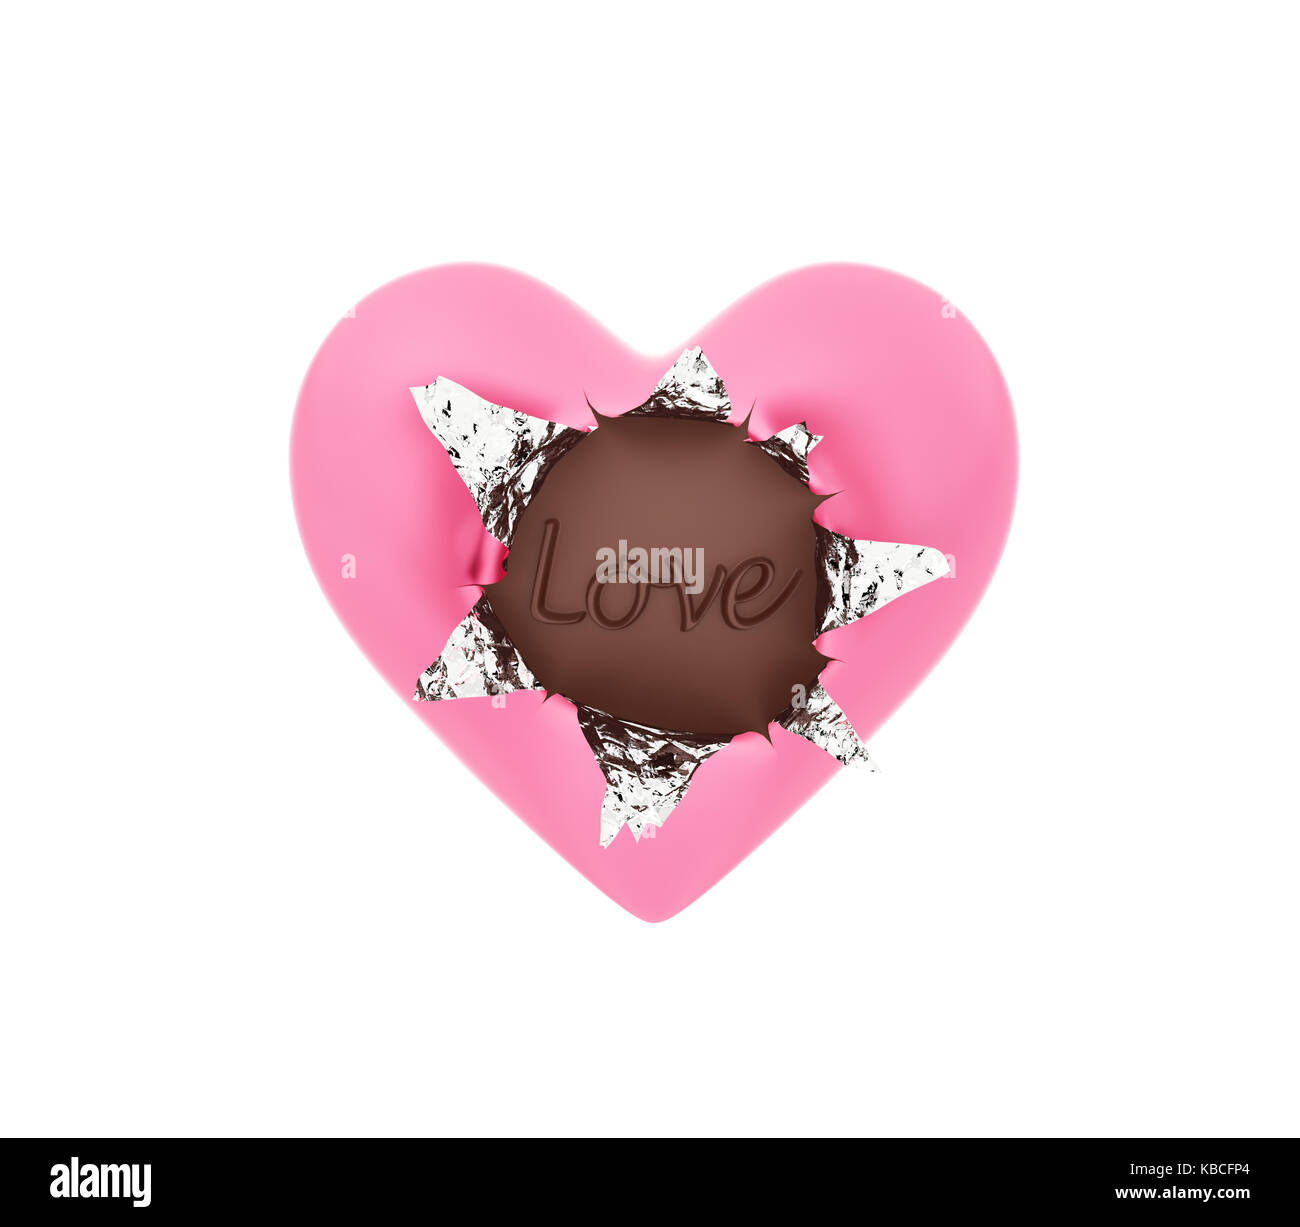 Chocolat en forme de coeur aluminium avec isolated on white Banque D'Images